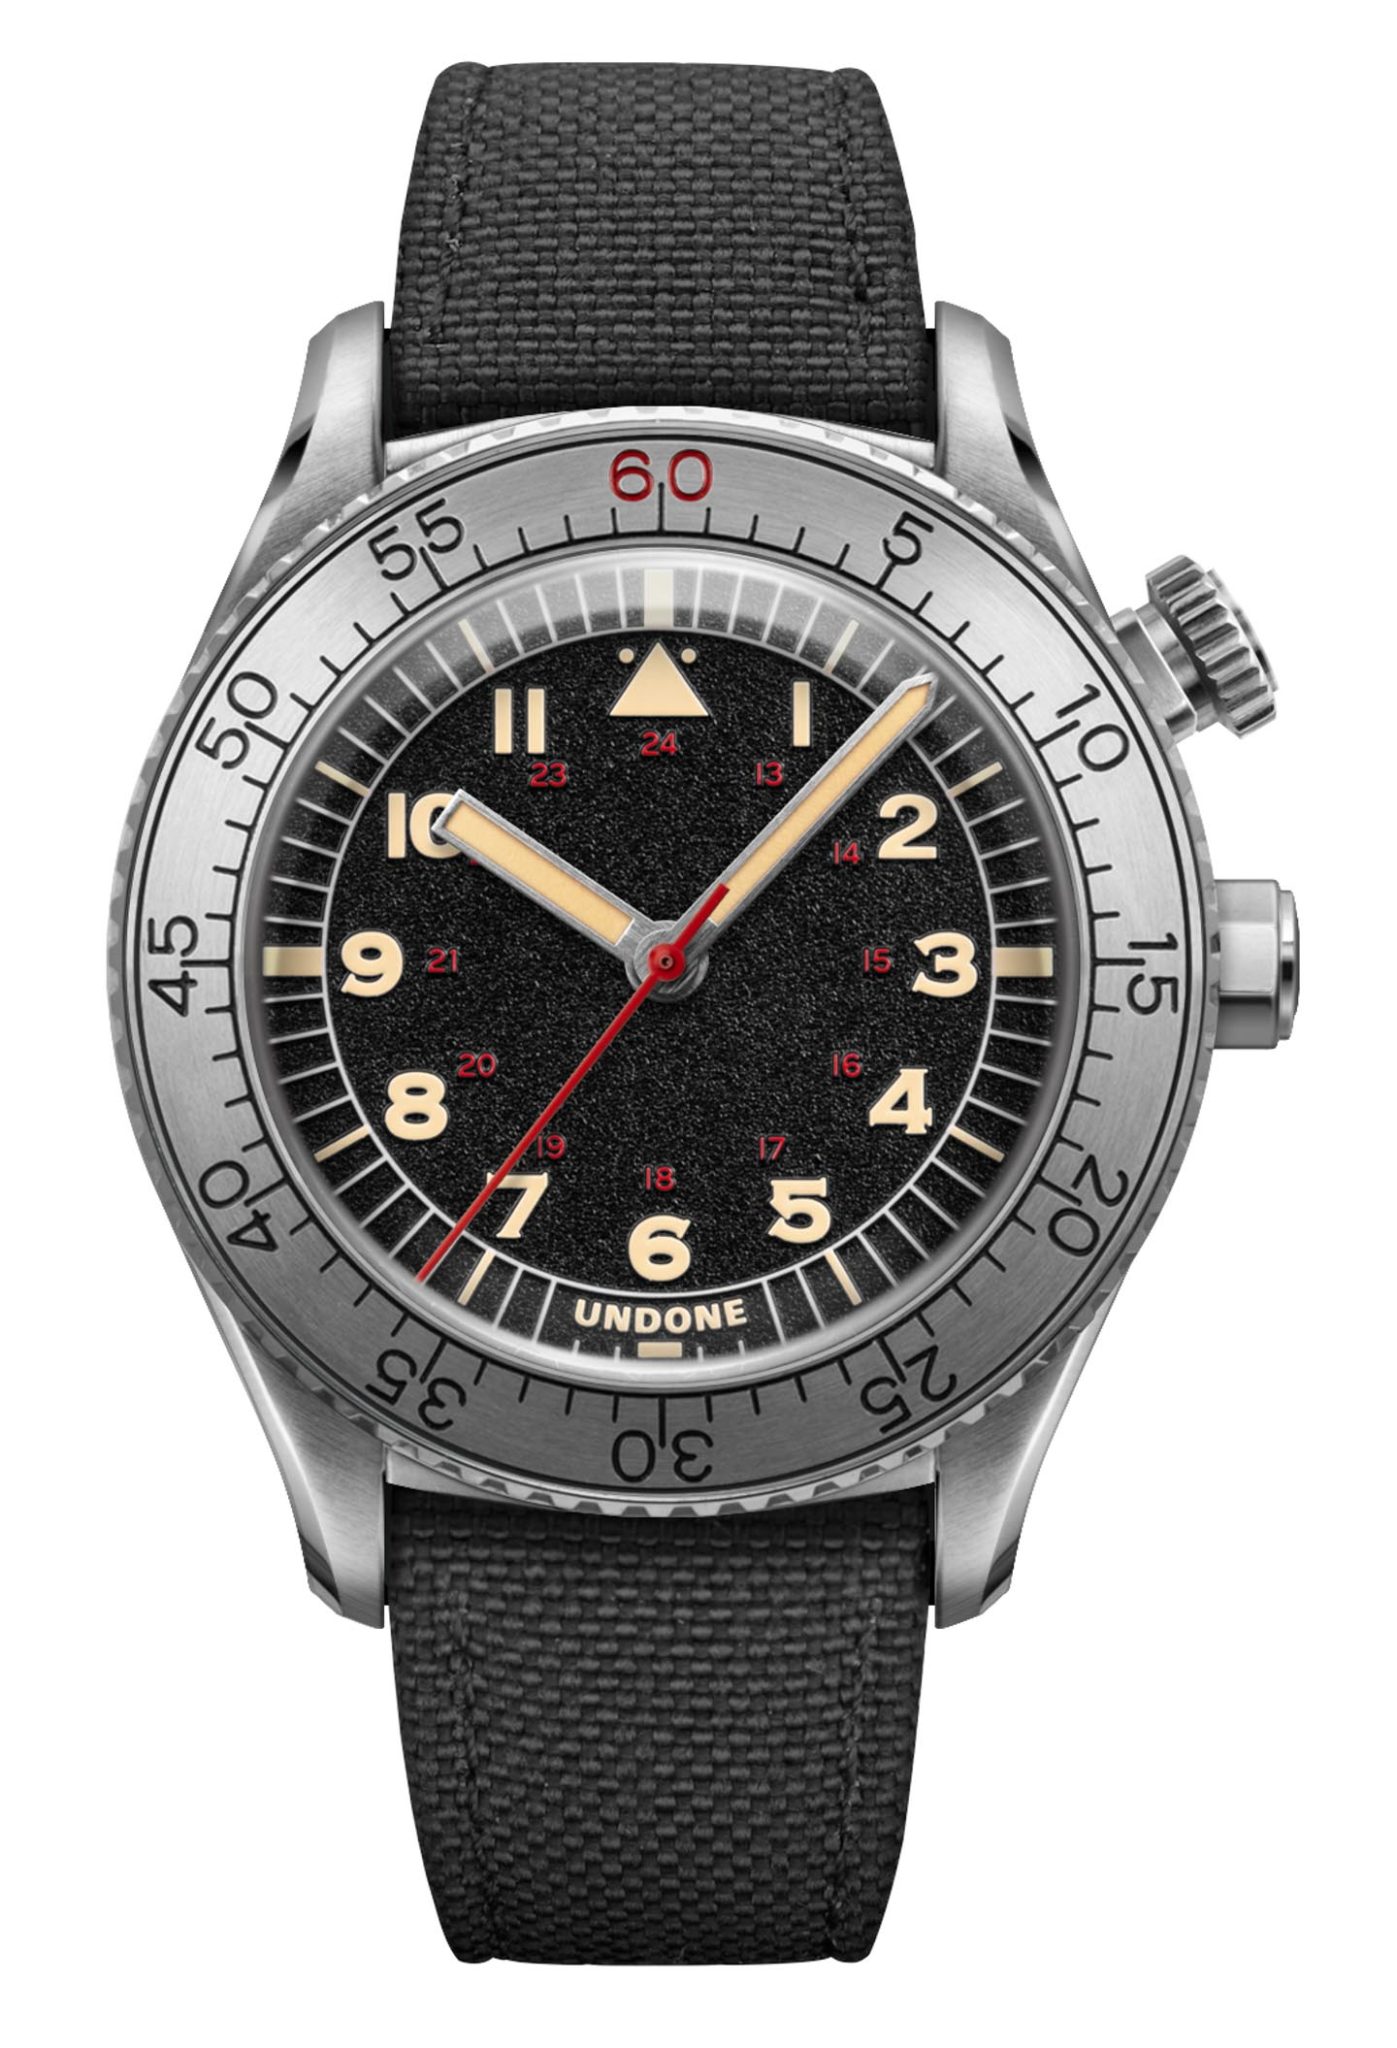 Undone's new Aero Collection Undone-Aero-Scientific-Commando-watch-7-1397x2048